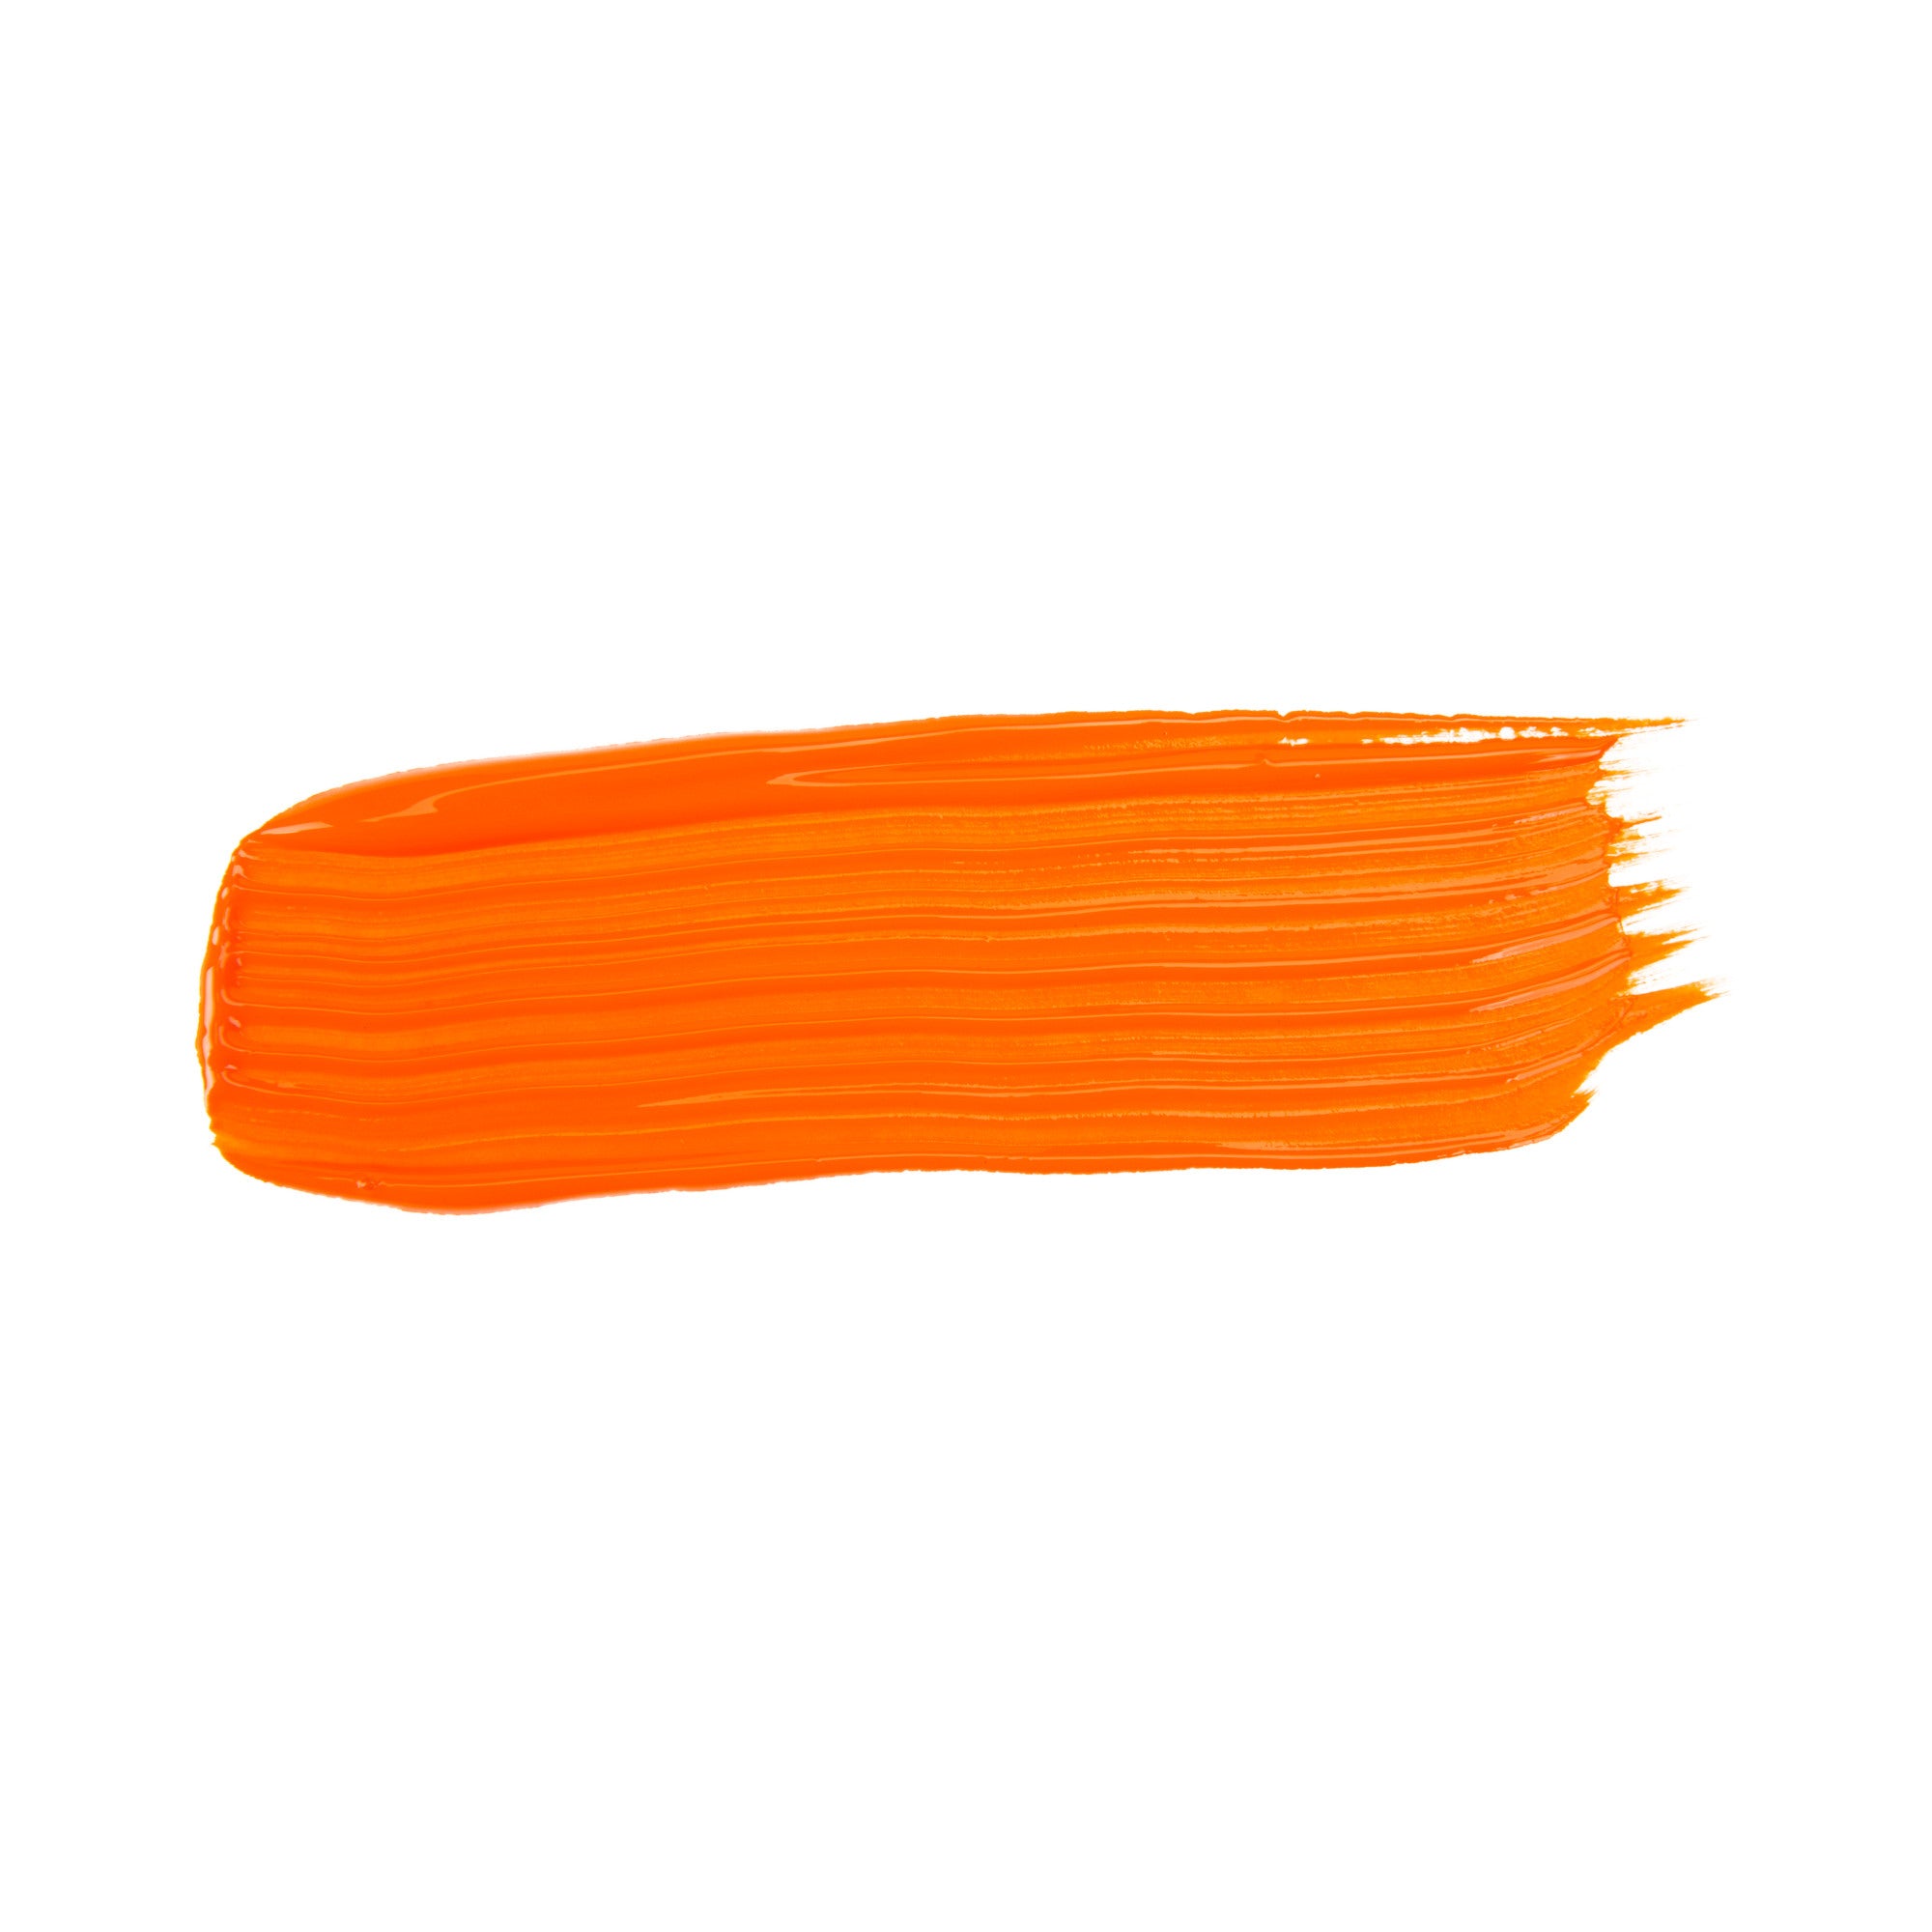 Crayola Washable Tempera Paint 946 ml, Orange